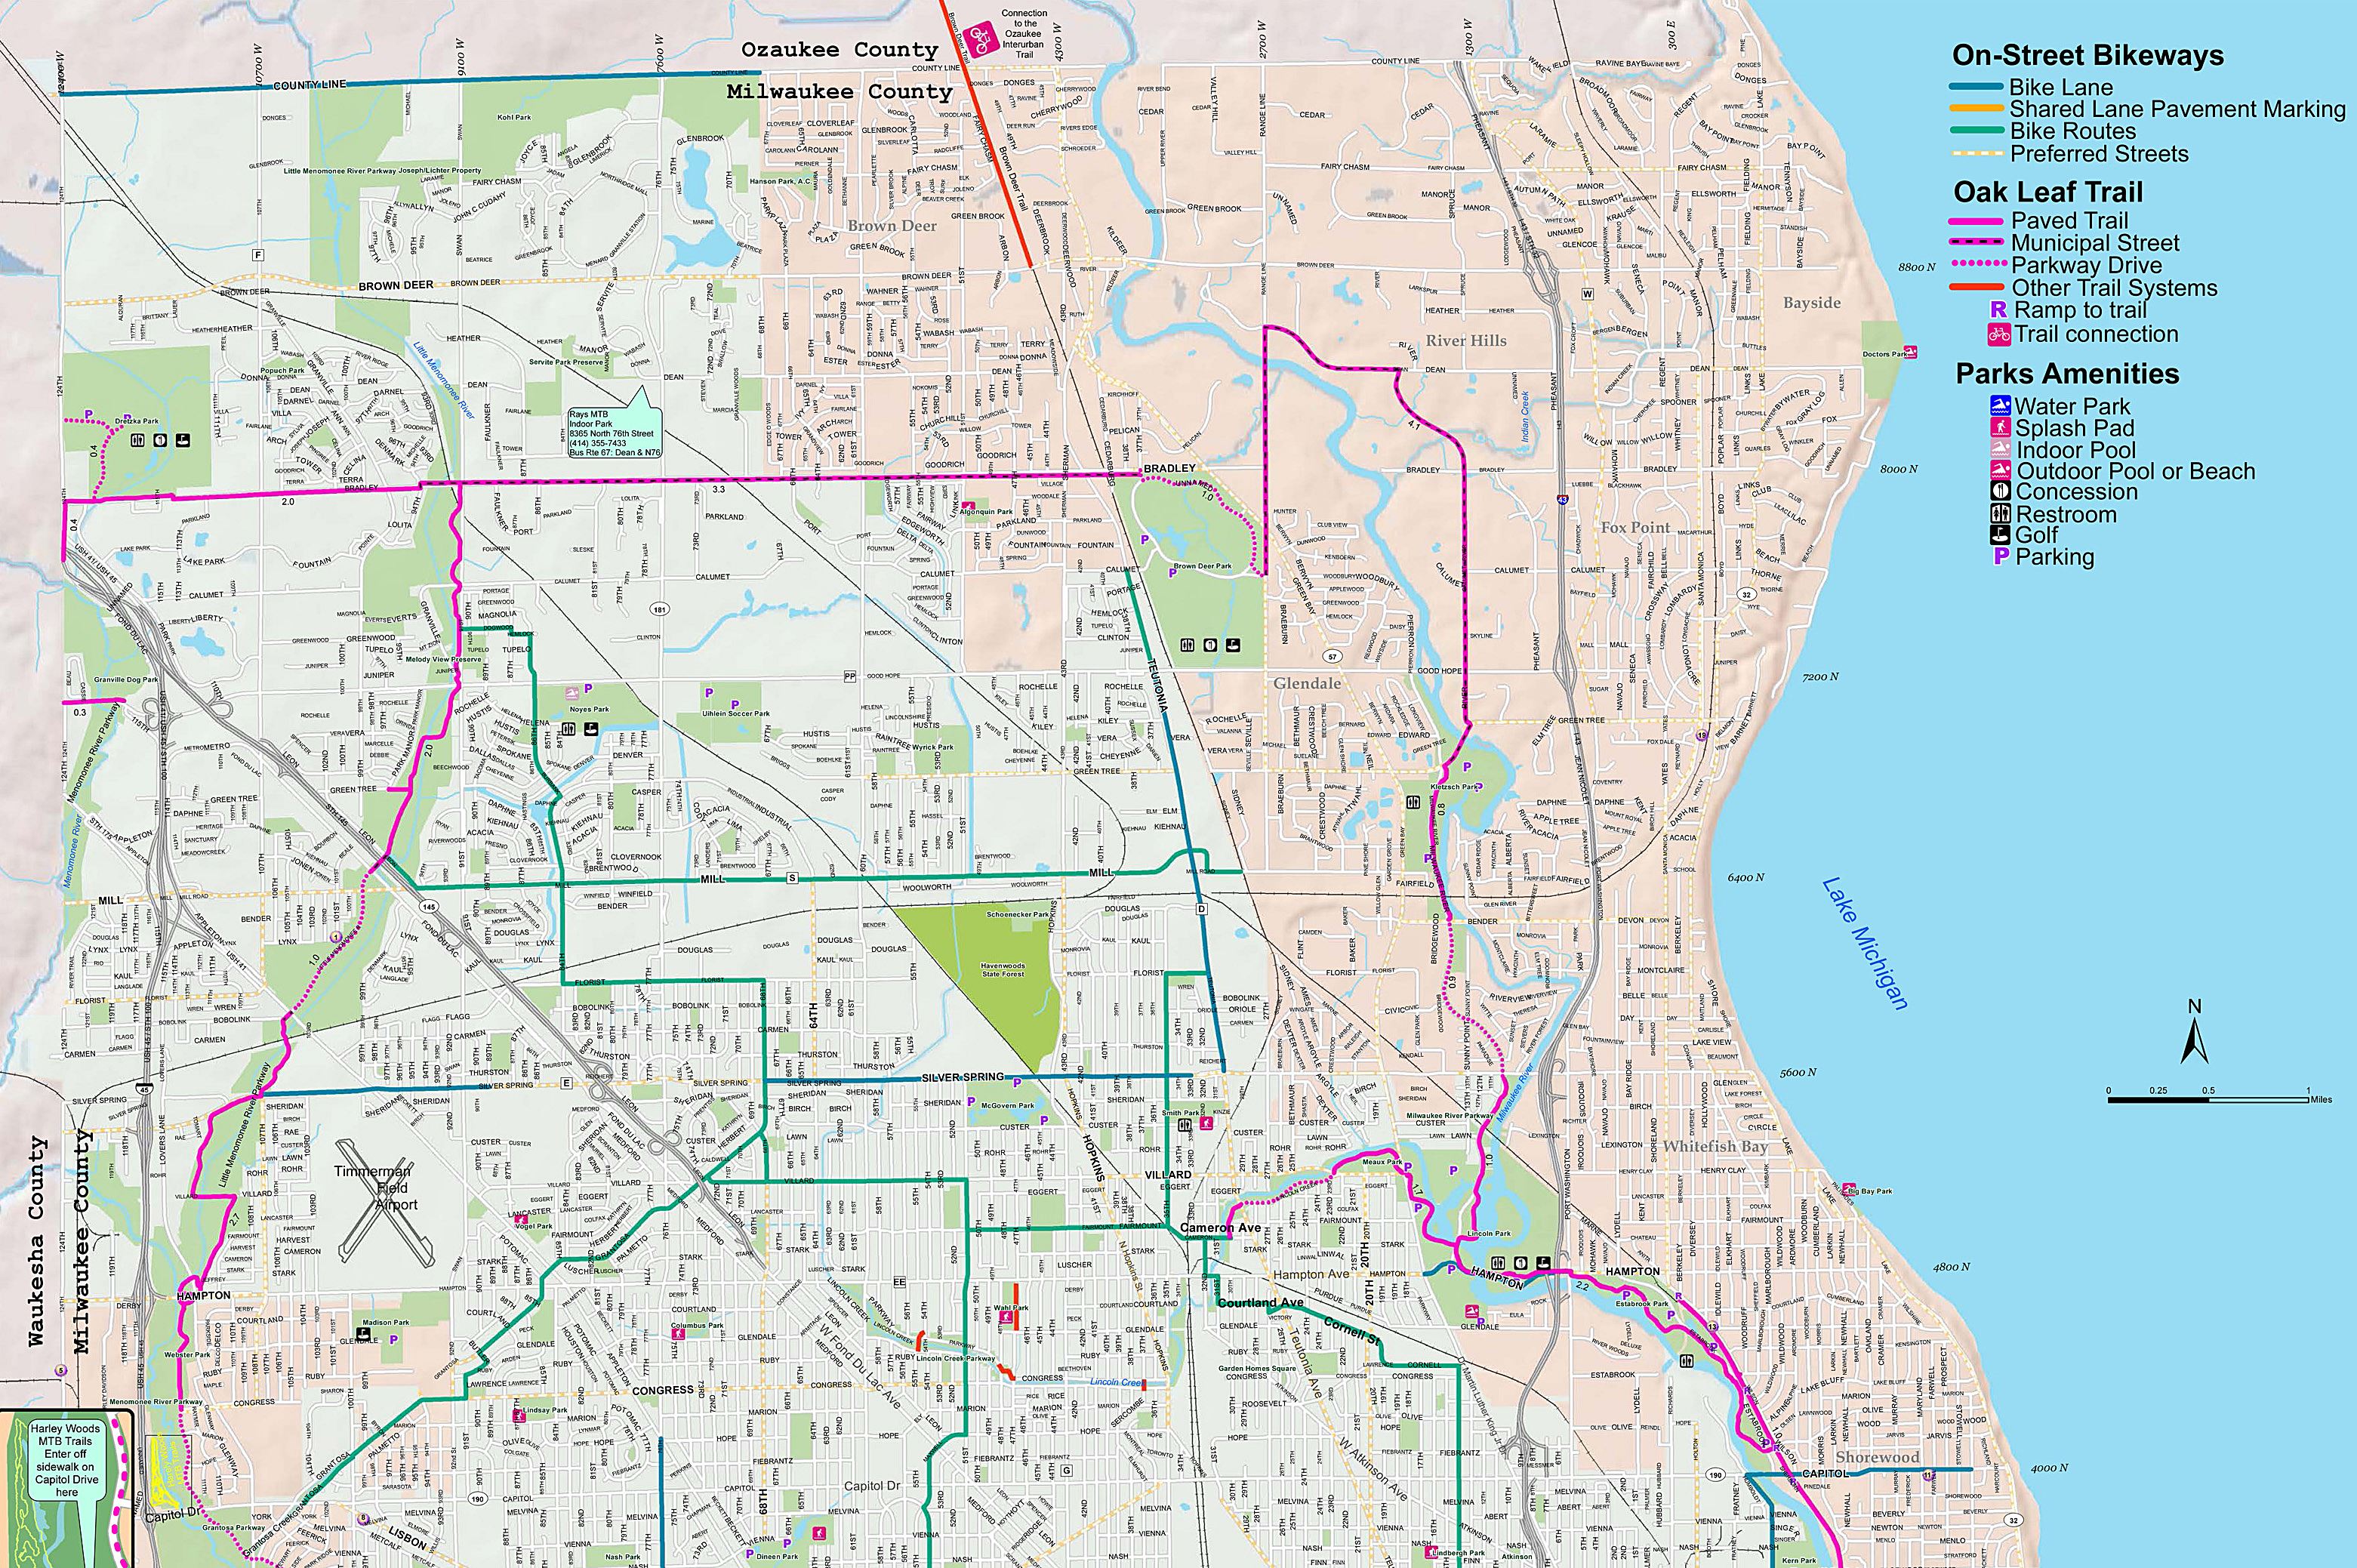 55 Images for : Usa Map Milwaukee - Kodeposid